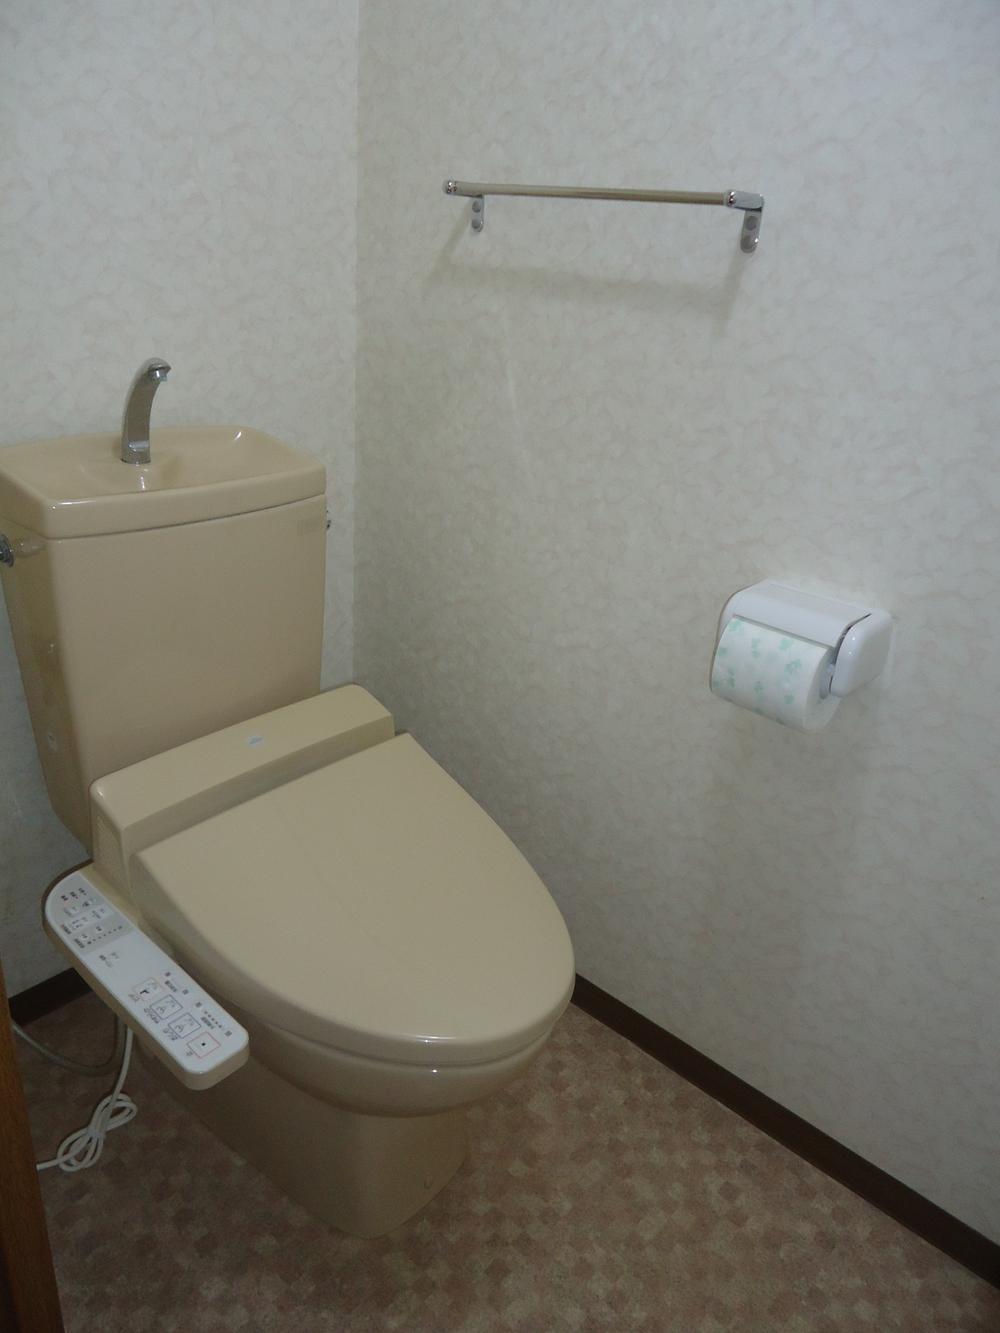 Toilet. Indoor (10 May 2013) Shooting